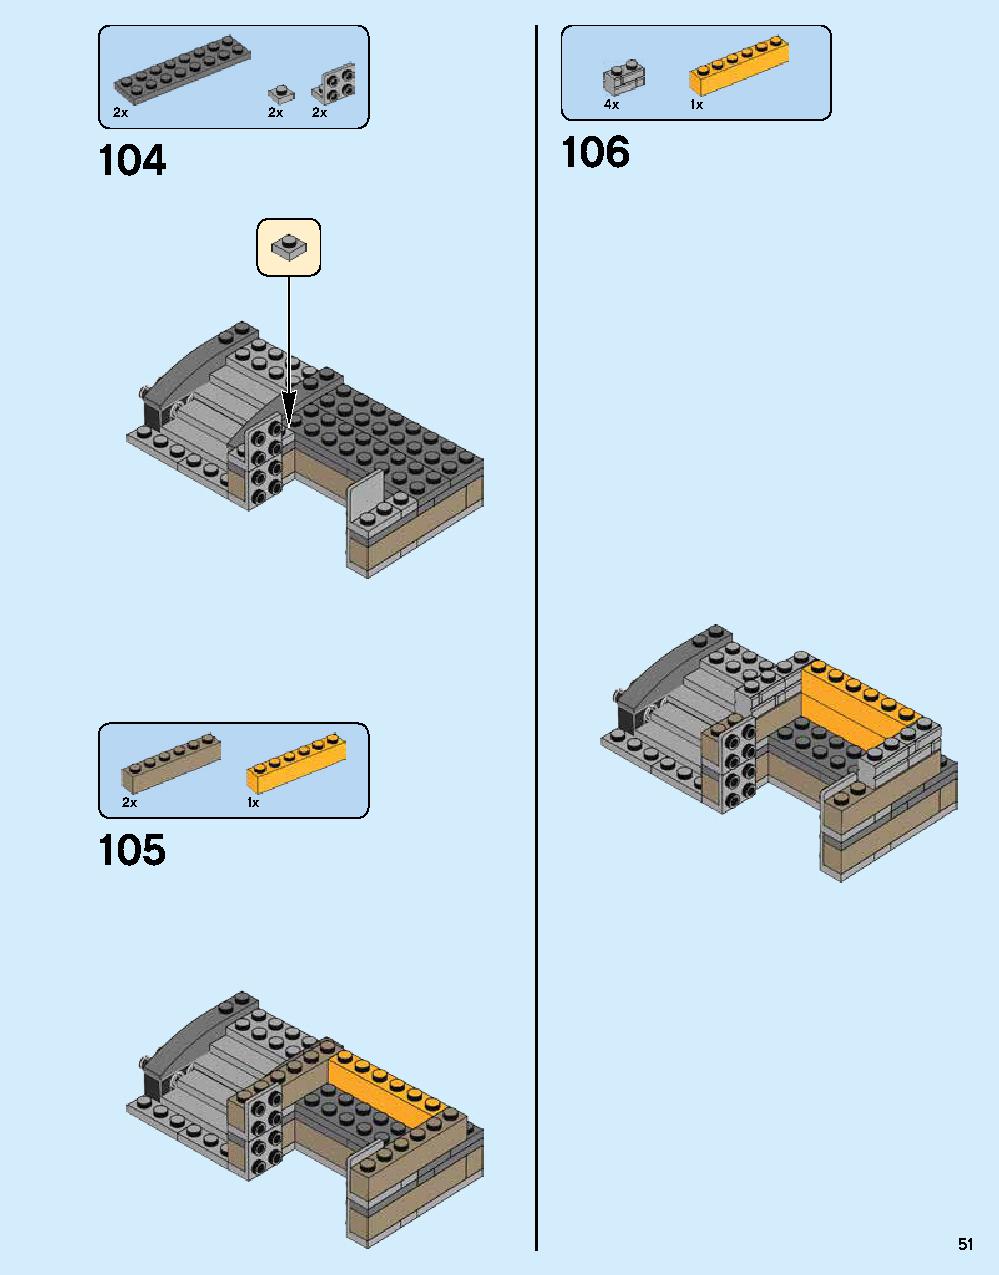 ニンジャゴー シティ 70620 レゴの商品情報 レゴの説明書・組立方法 51 page